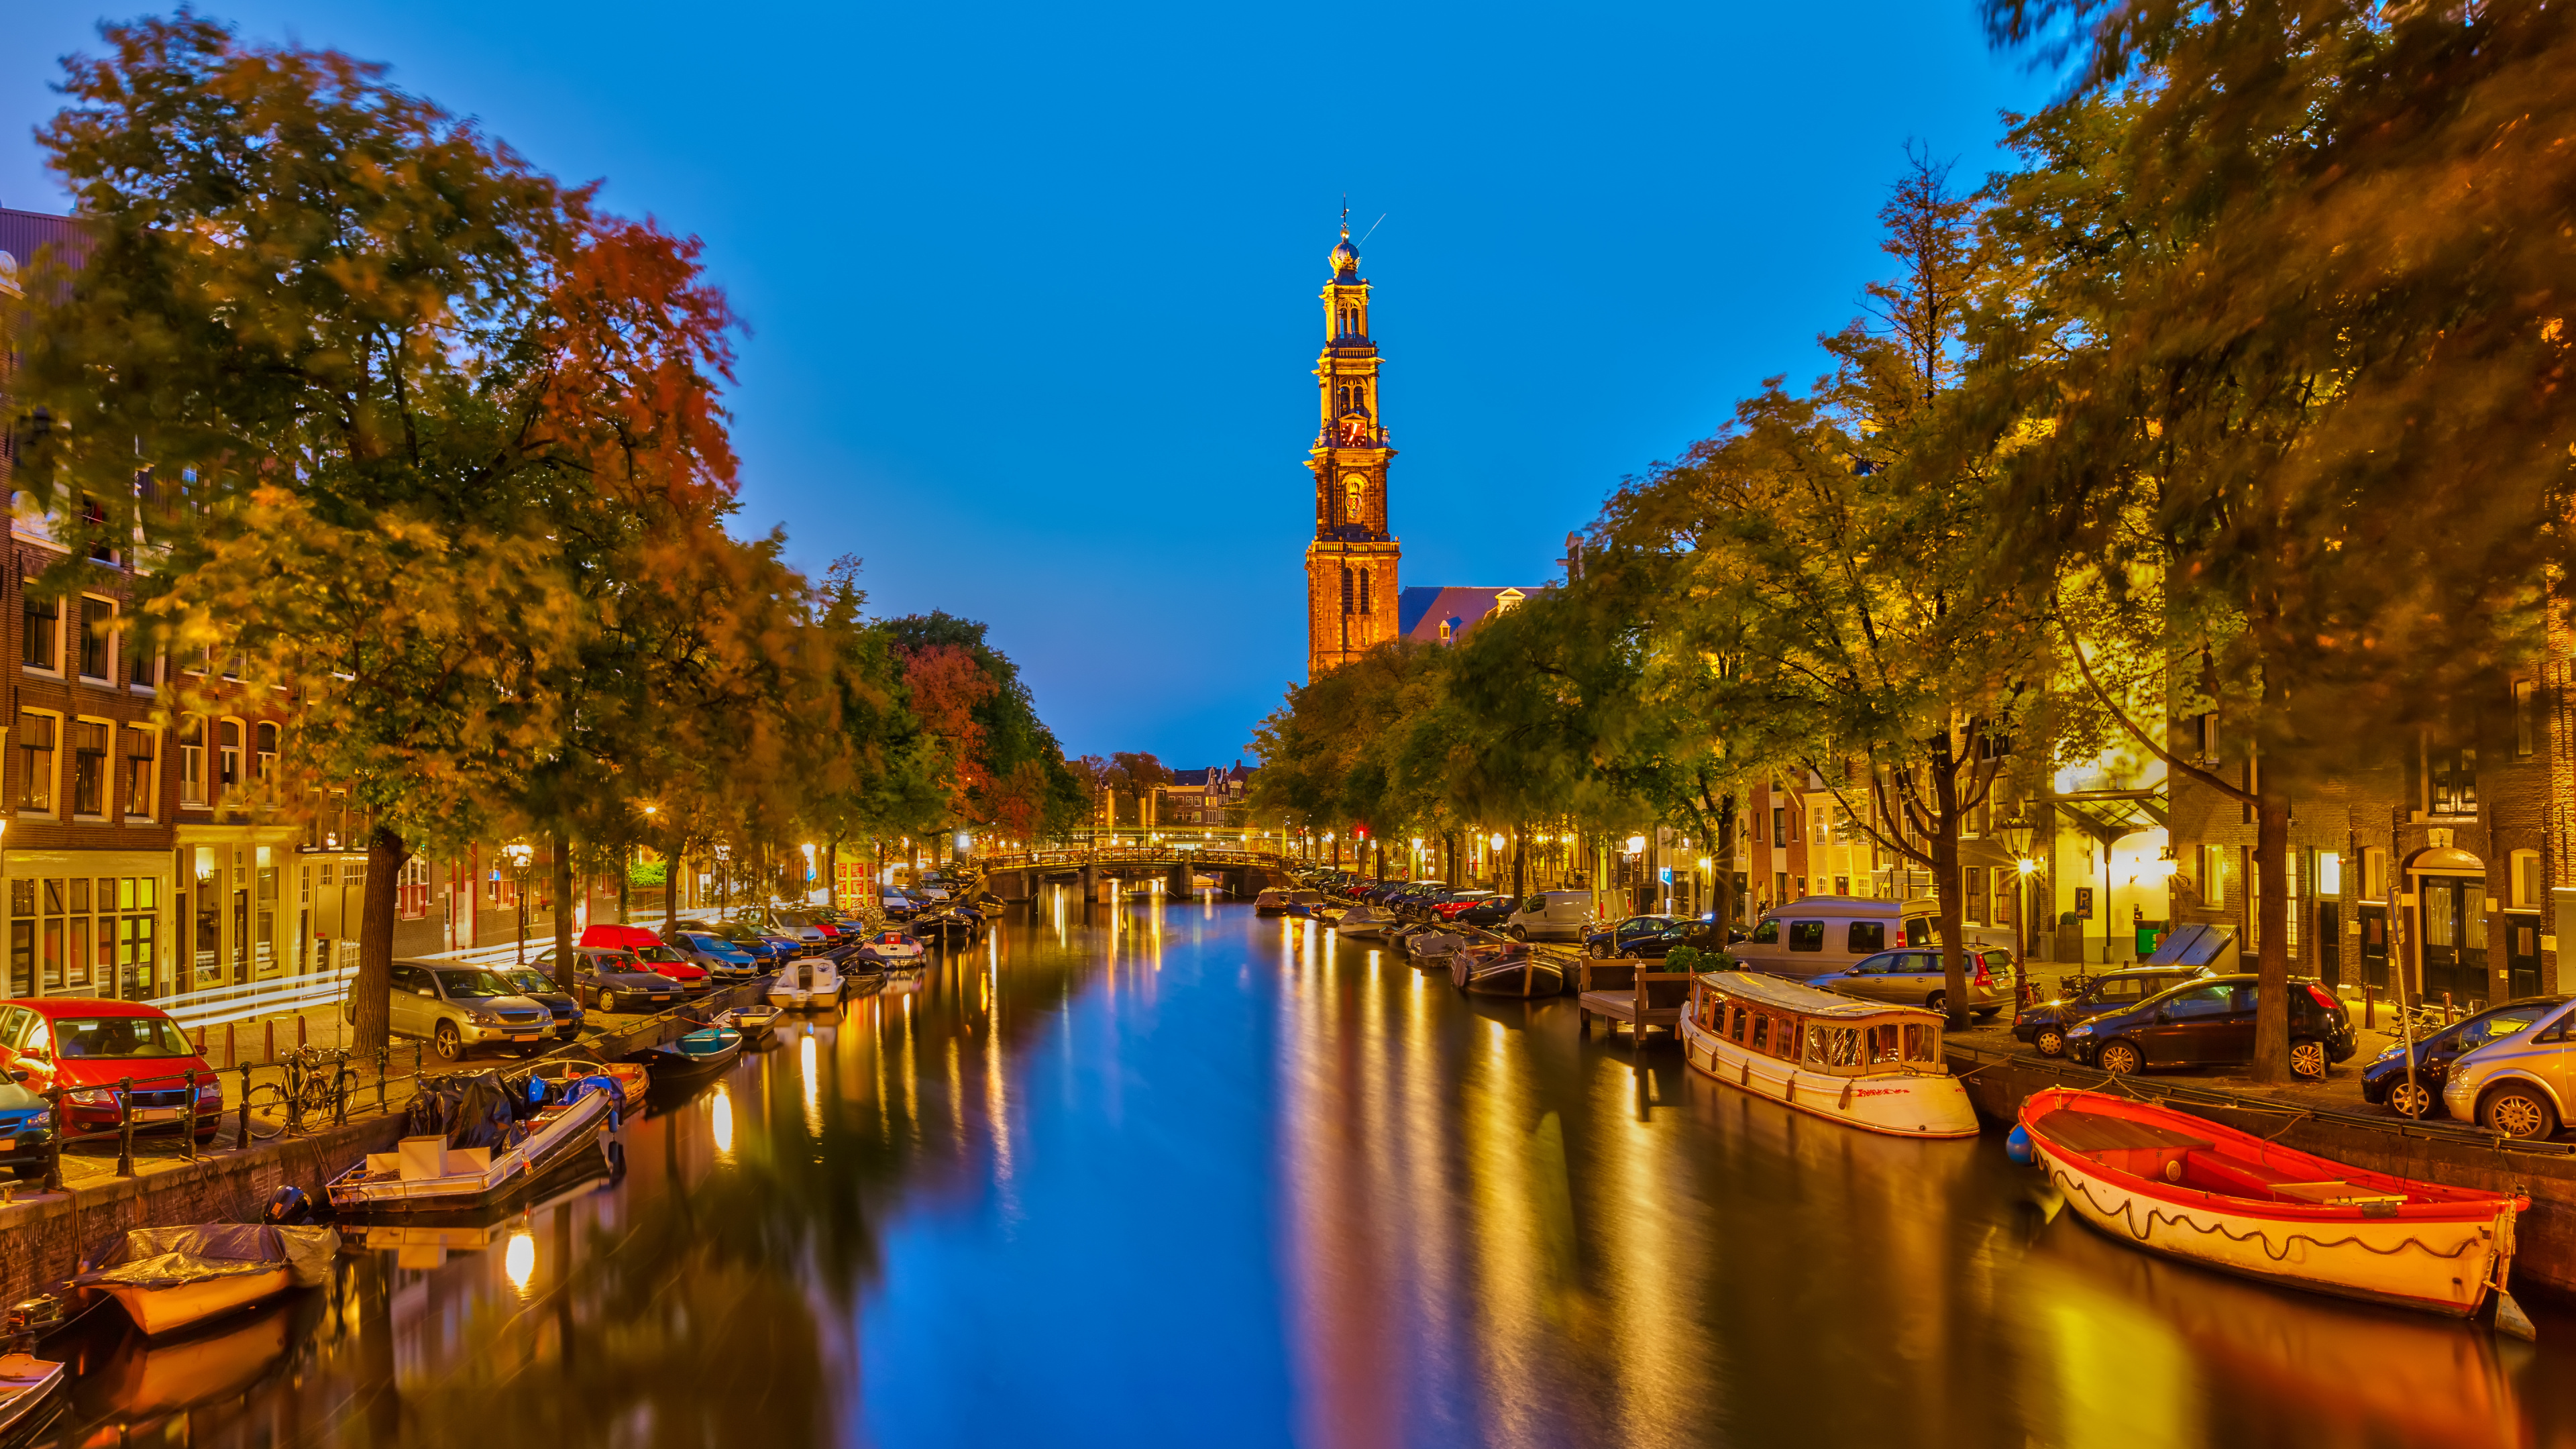 阿姆斯特丹运河, 运河, 人体内的水, 反射, 里程碑 壁纸 3840x2160 允许